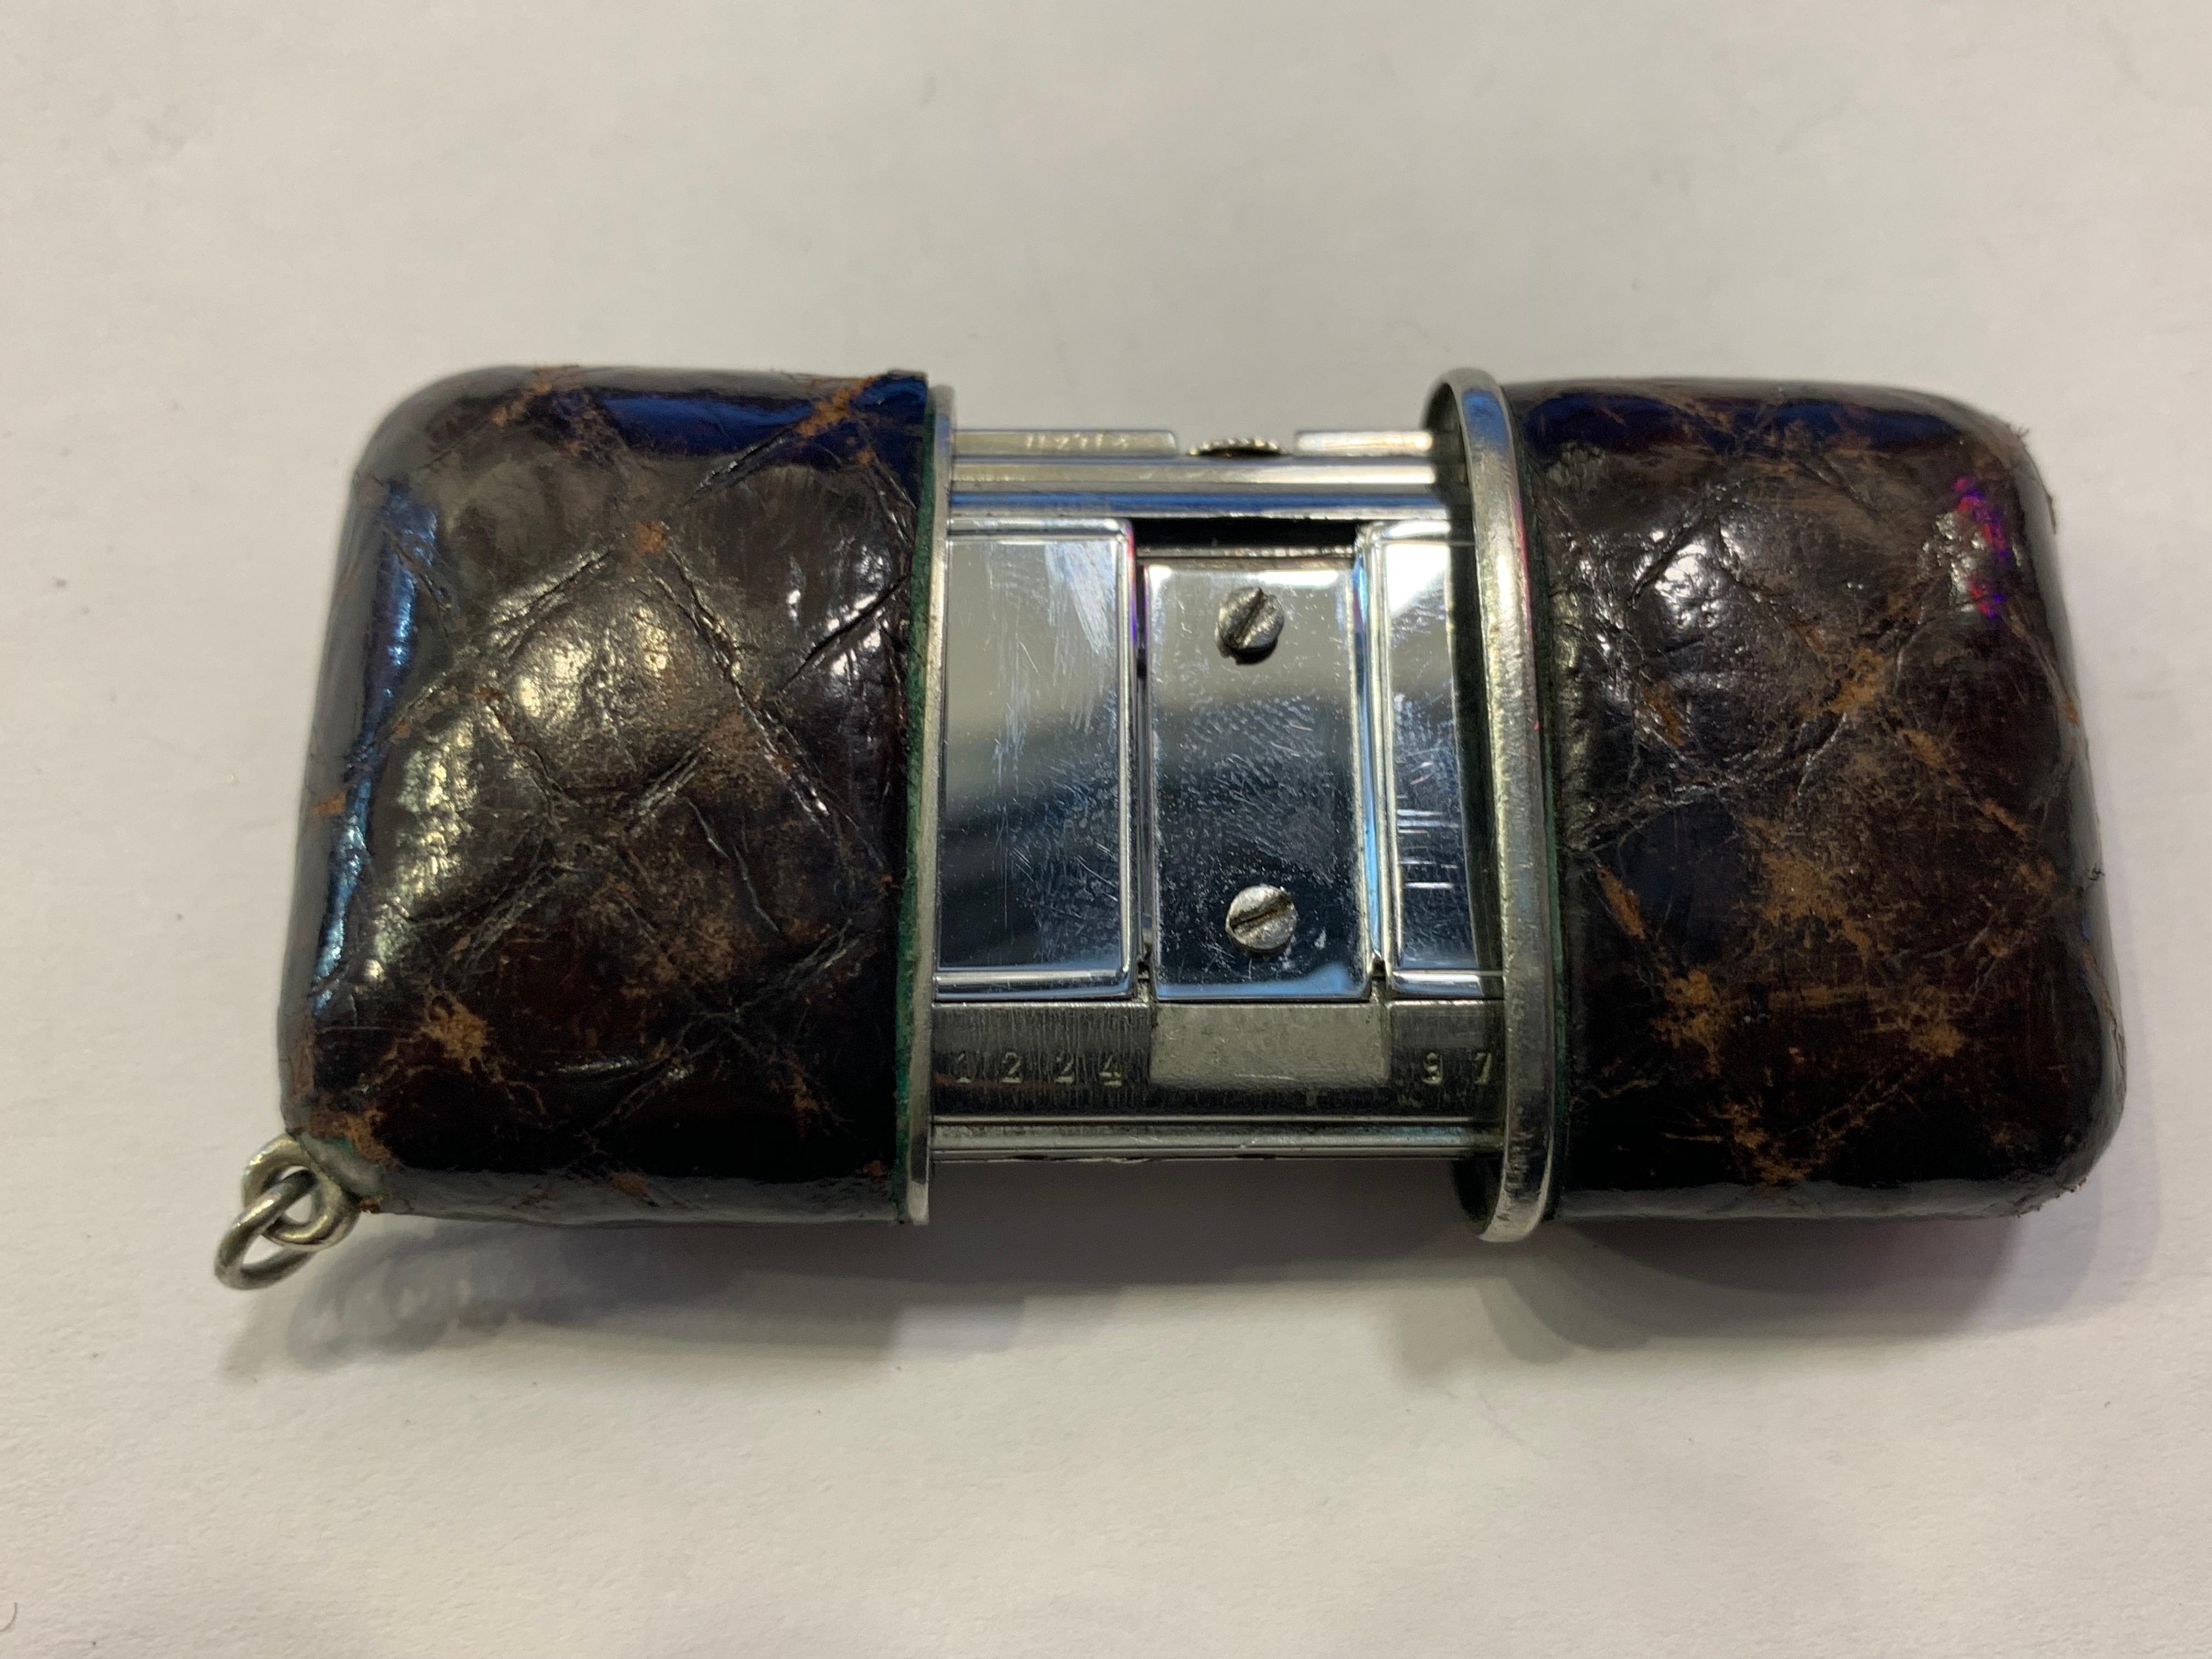 Eine silberne Movado 'Ermeto' Reiseuhr in einem braunen originalen Krokodilgehäuse. Das Zifferblatt ist mit 'Movado Chronometre Ermeto' signiert, die Zeiger sind aus blauem Stahl. Beim Öffnen der Schiebedeckel wird ein Ritzel auf der Aufzugswelle